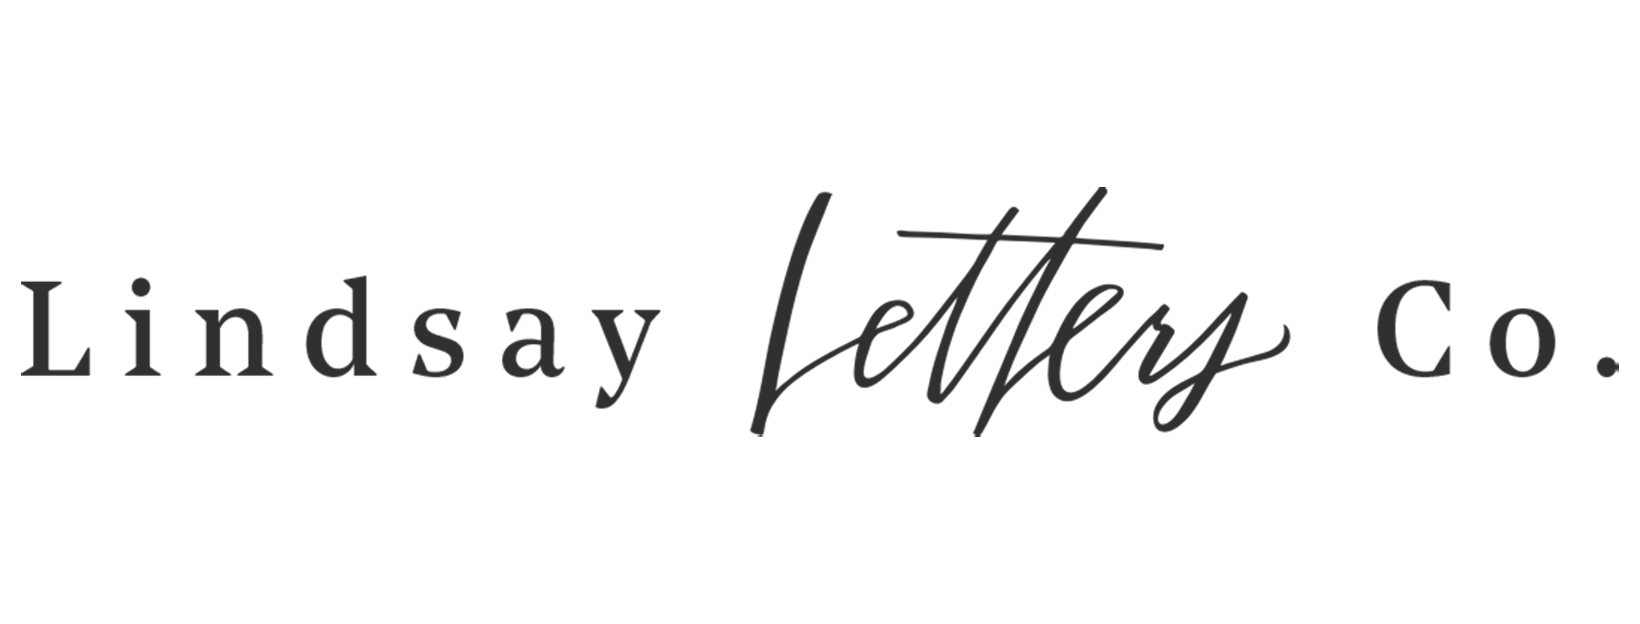 Lindsay Letters logo